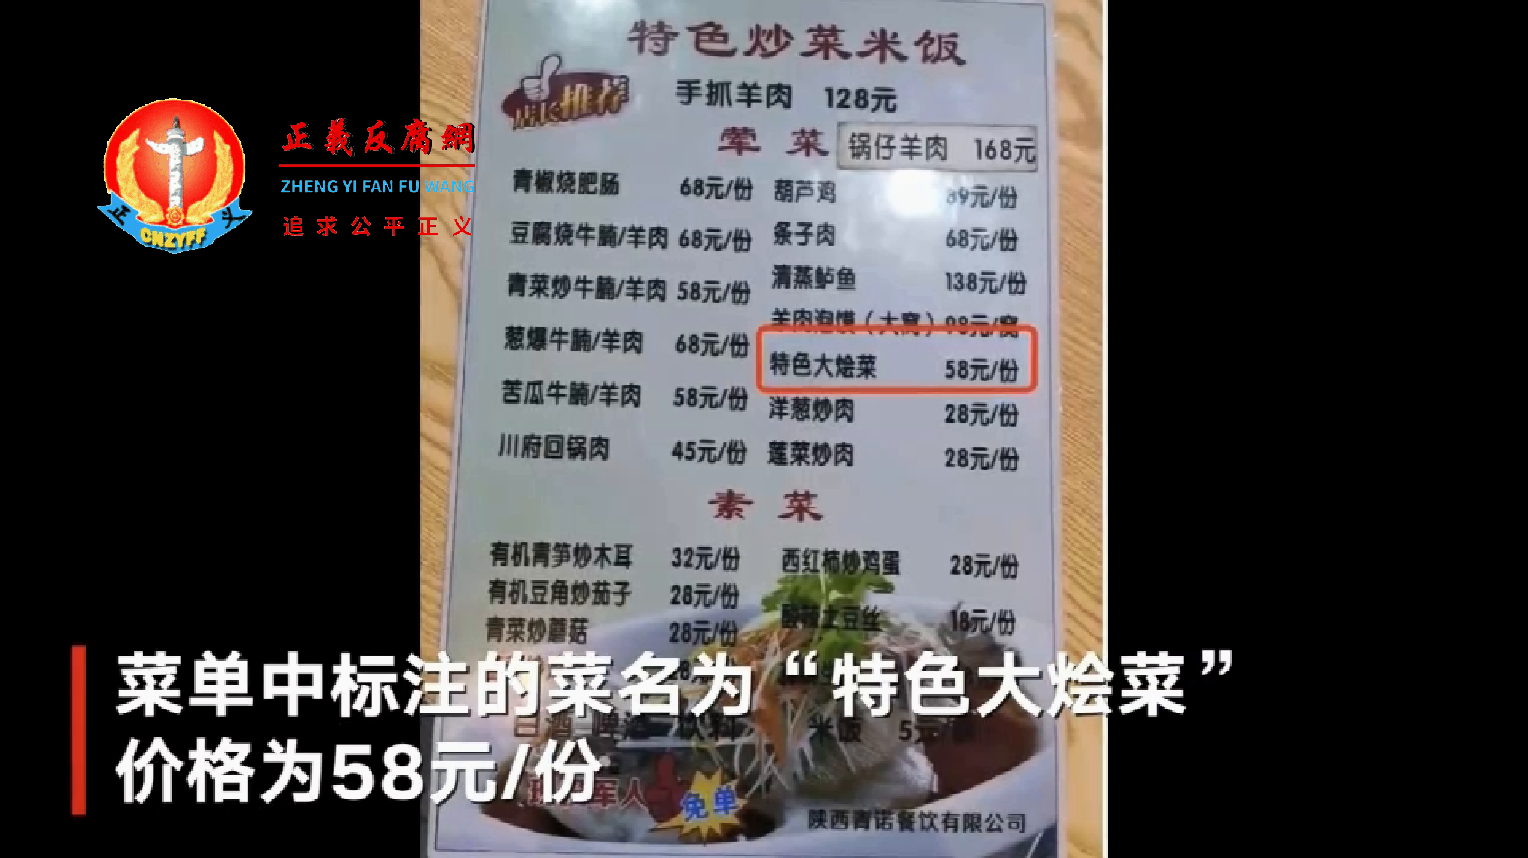 游客被宰：西安临潼区秦唐大道清悦荣荟的菜单中标注的菜名为“特色大烩菜”价格为58元份。.png